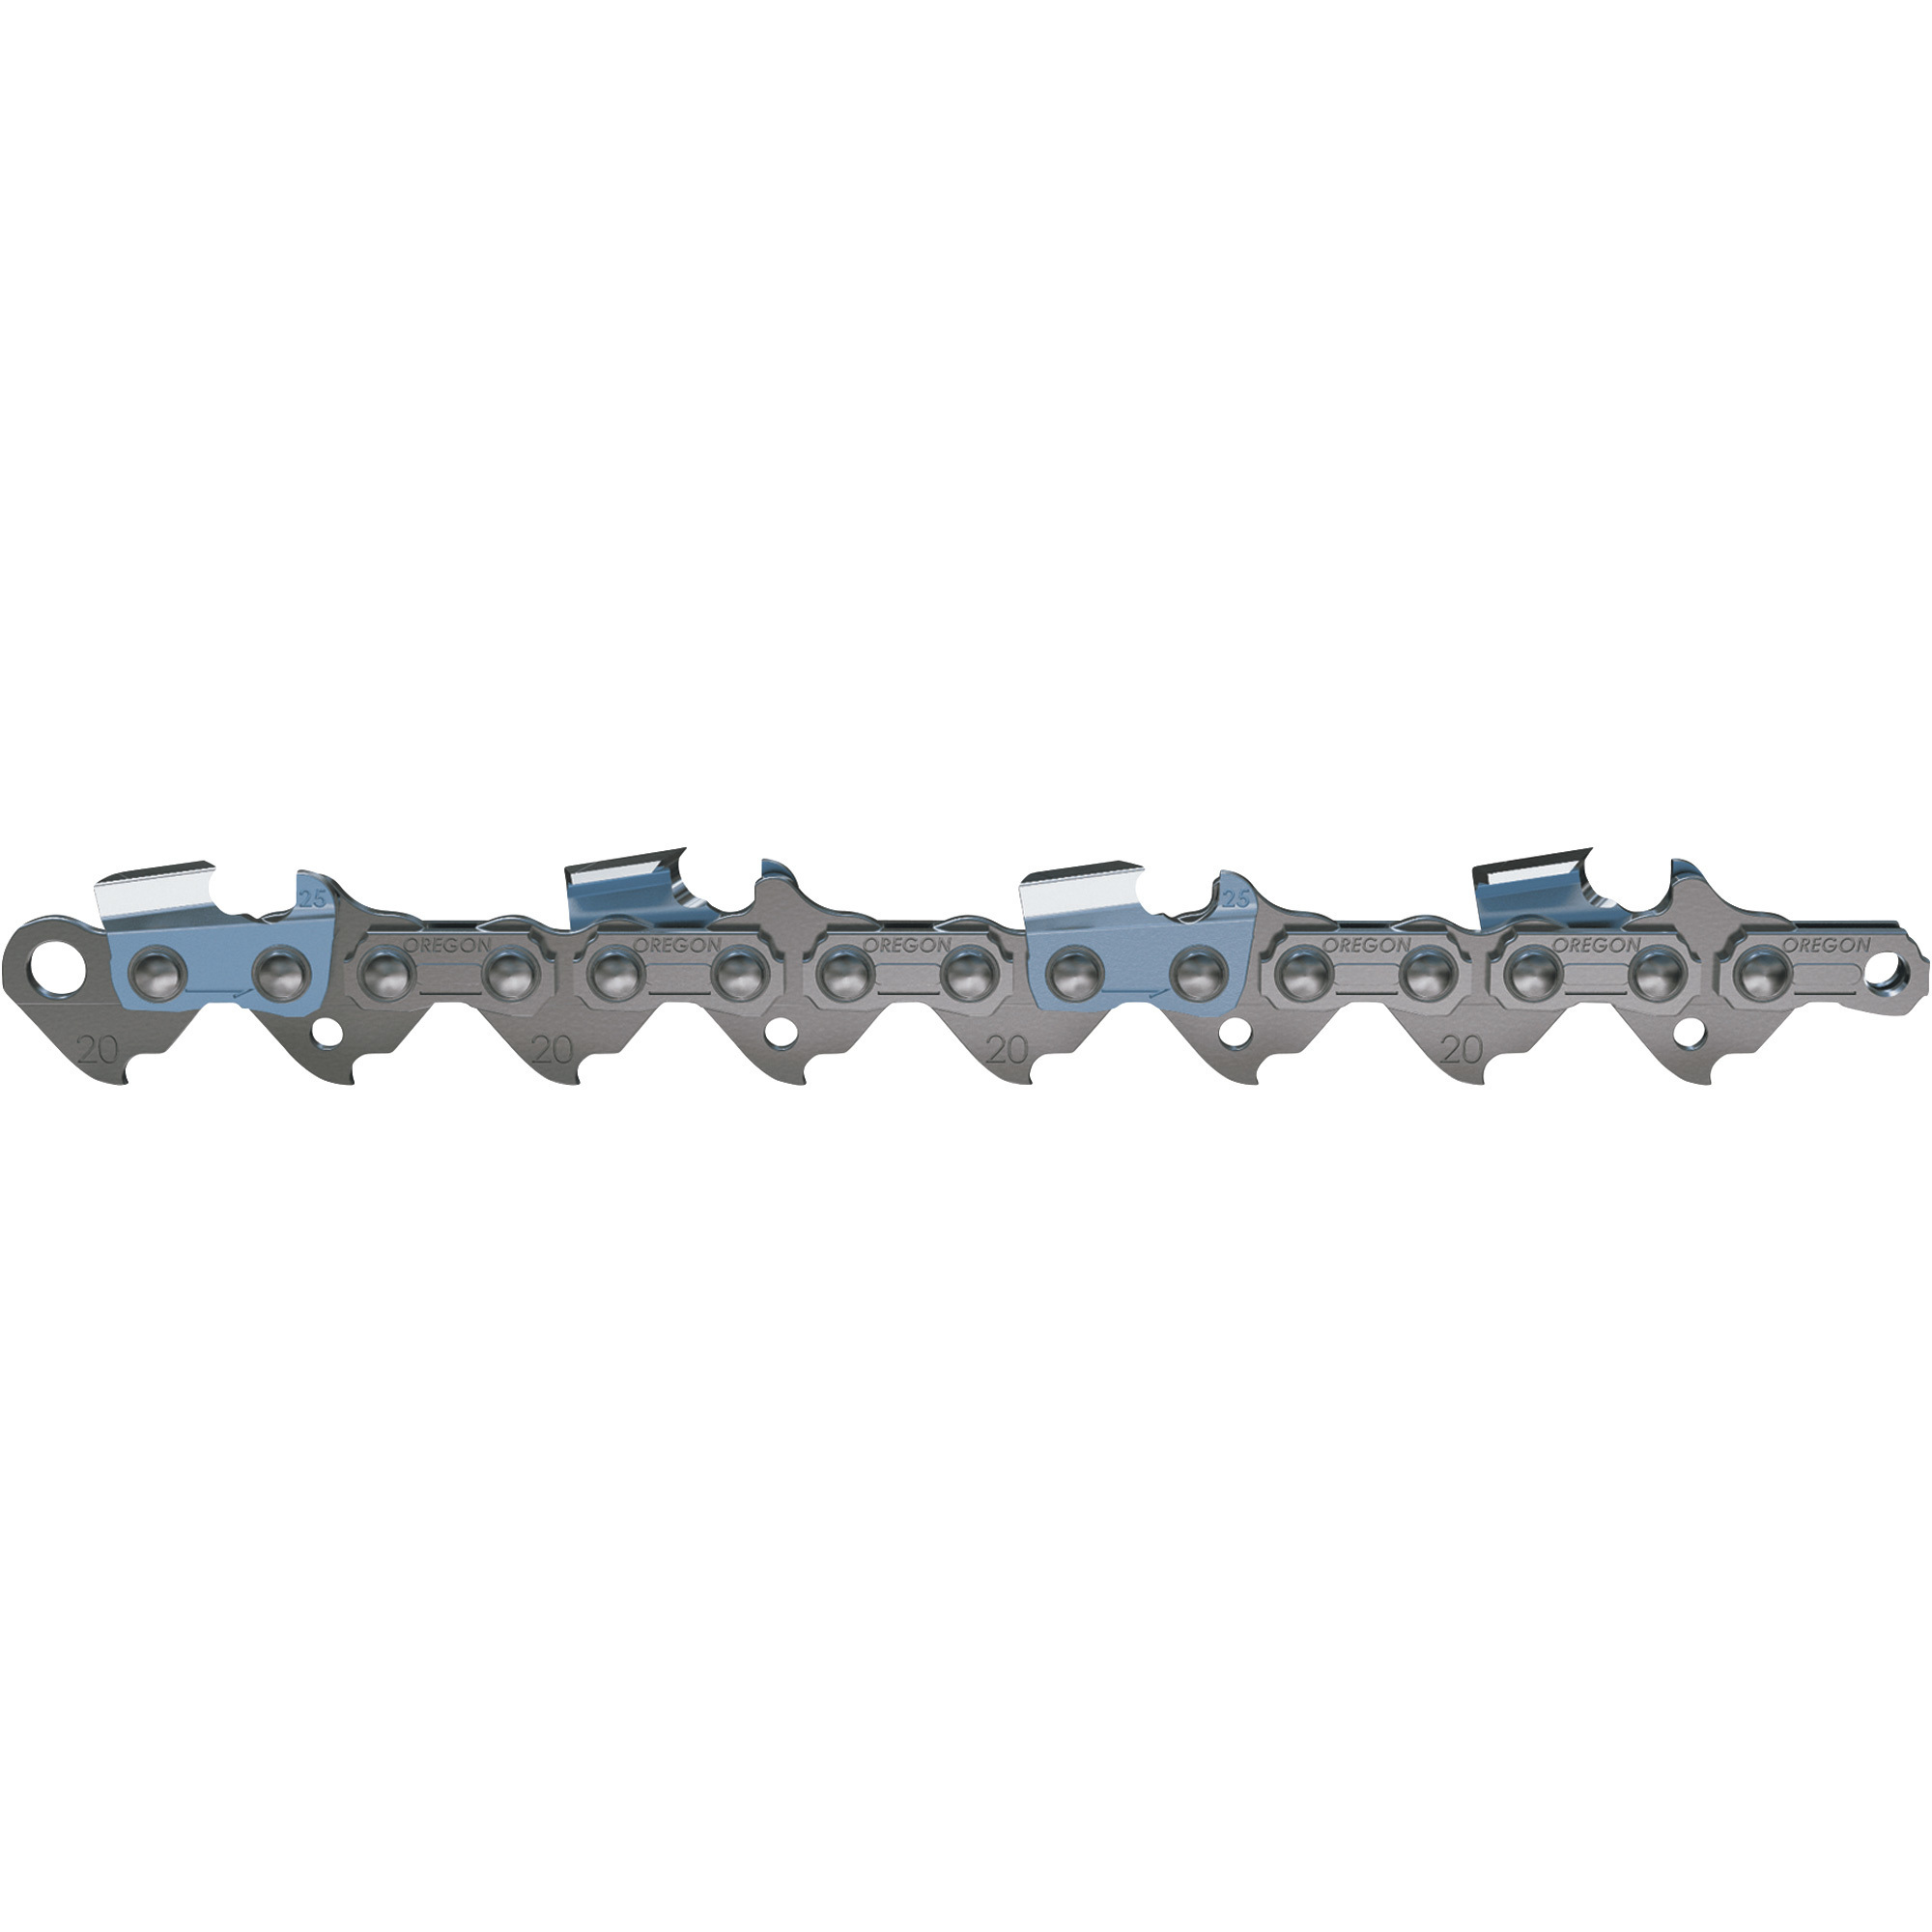 X-Grind Chainsaw Chain — 0.325Inch x 0.050Inch, Fits 20Inch Bar, Model /20LPX078G - Oregon Q78